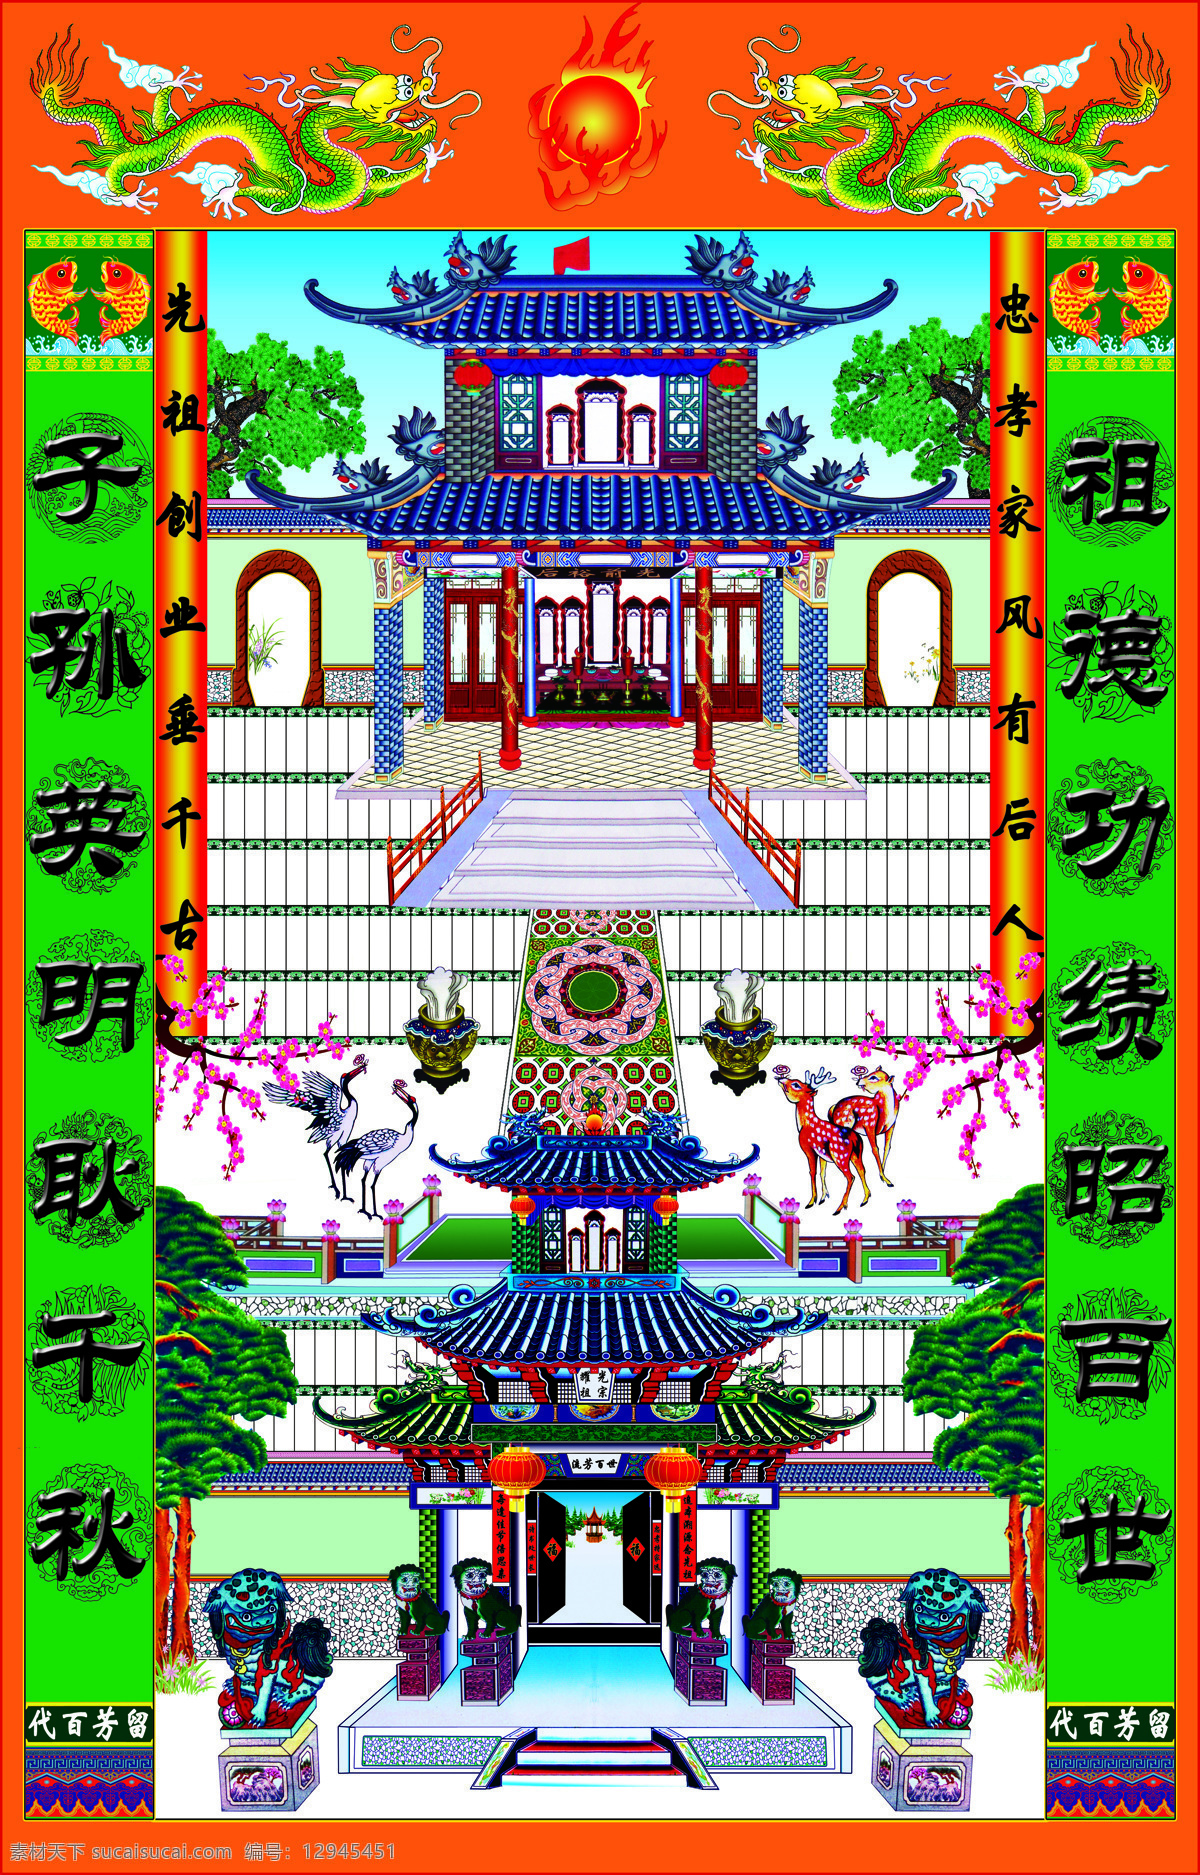 家谱 瓦当 龙图 家堂 挂轴 中堂 主子 传统 春节 用品 传统文化 文化艺术